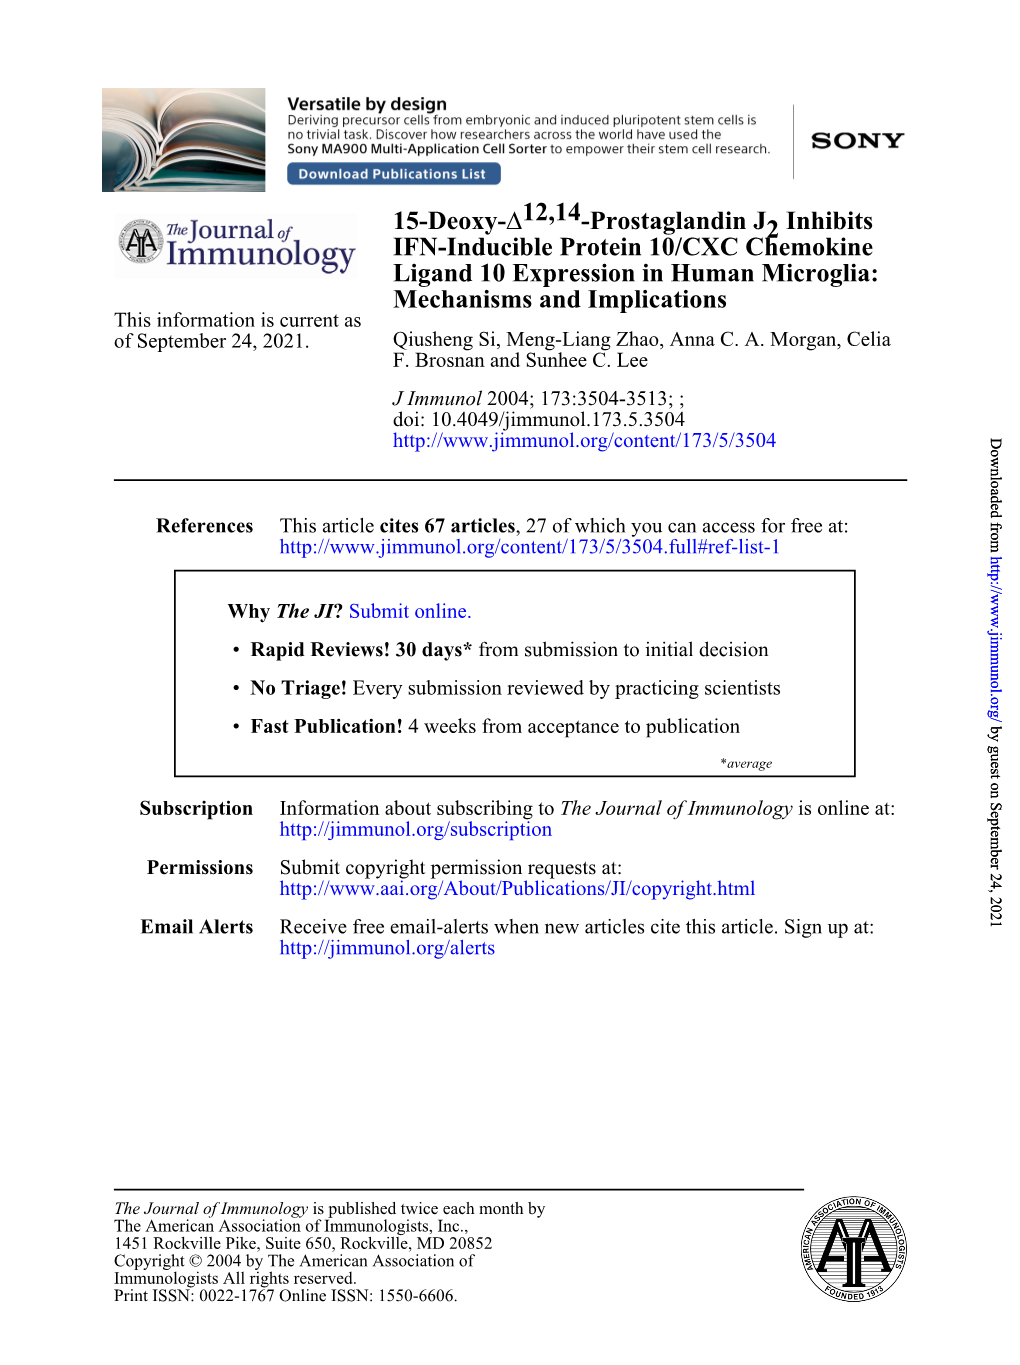 IFN-Inducible Protein 10/CXC Chemokine Inhibits 2